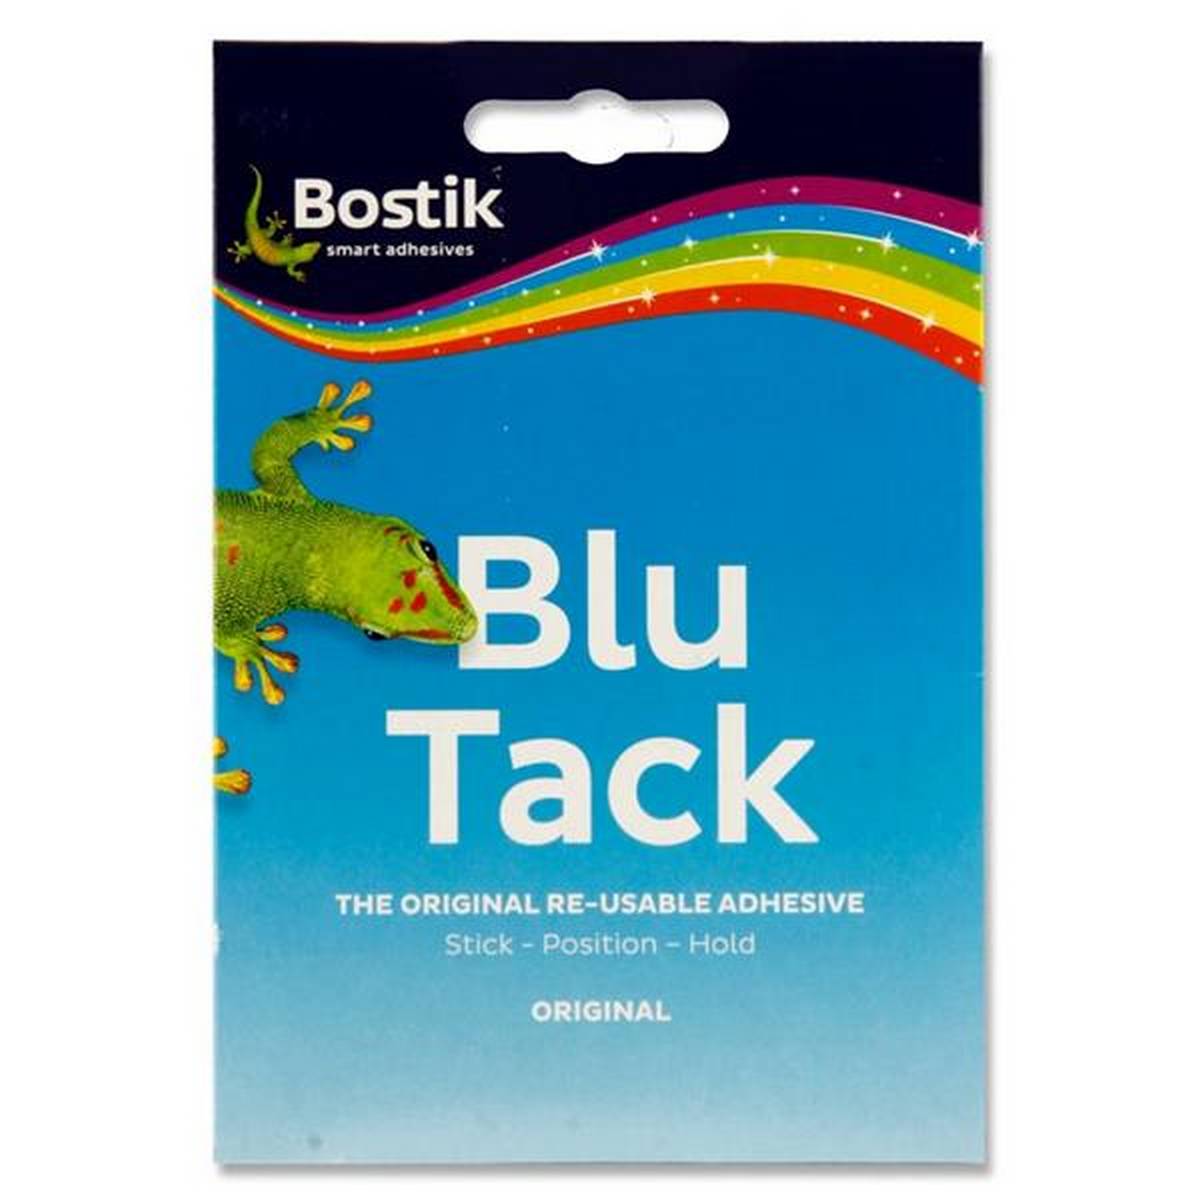 Bostik Blue Tack Original